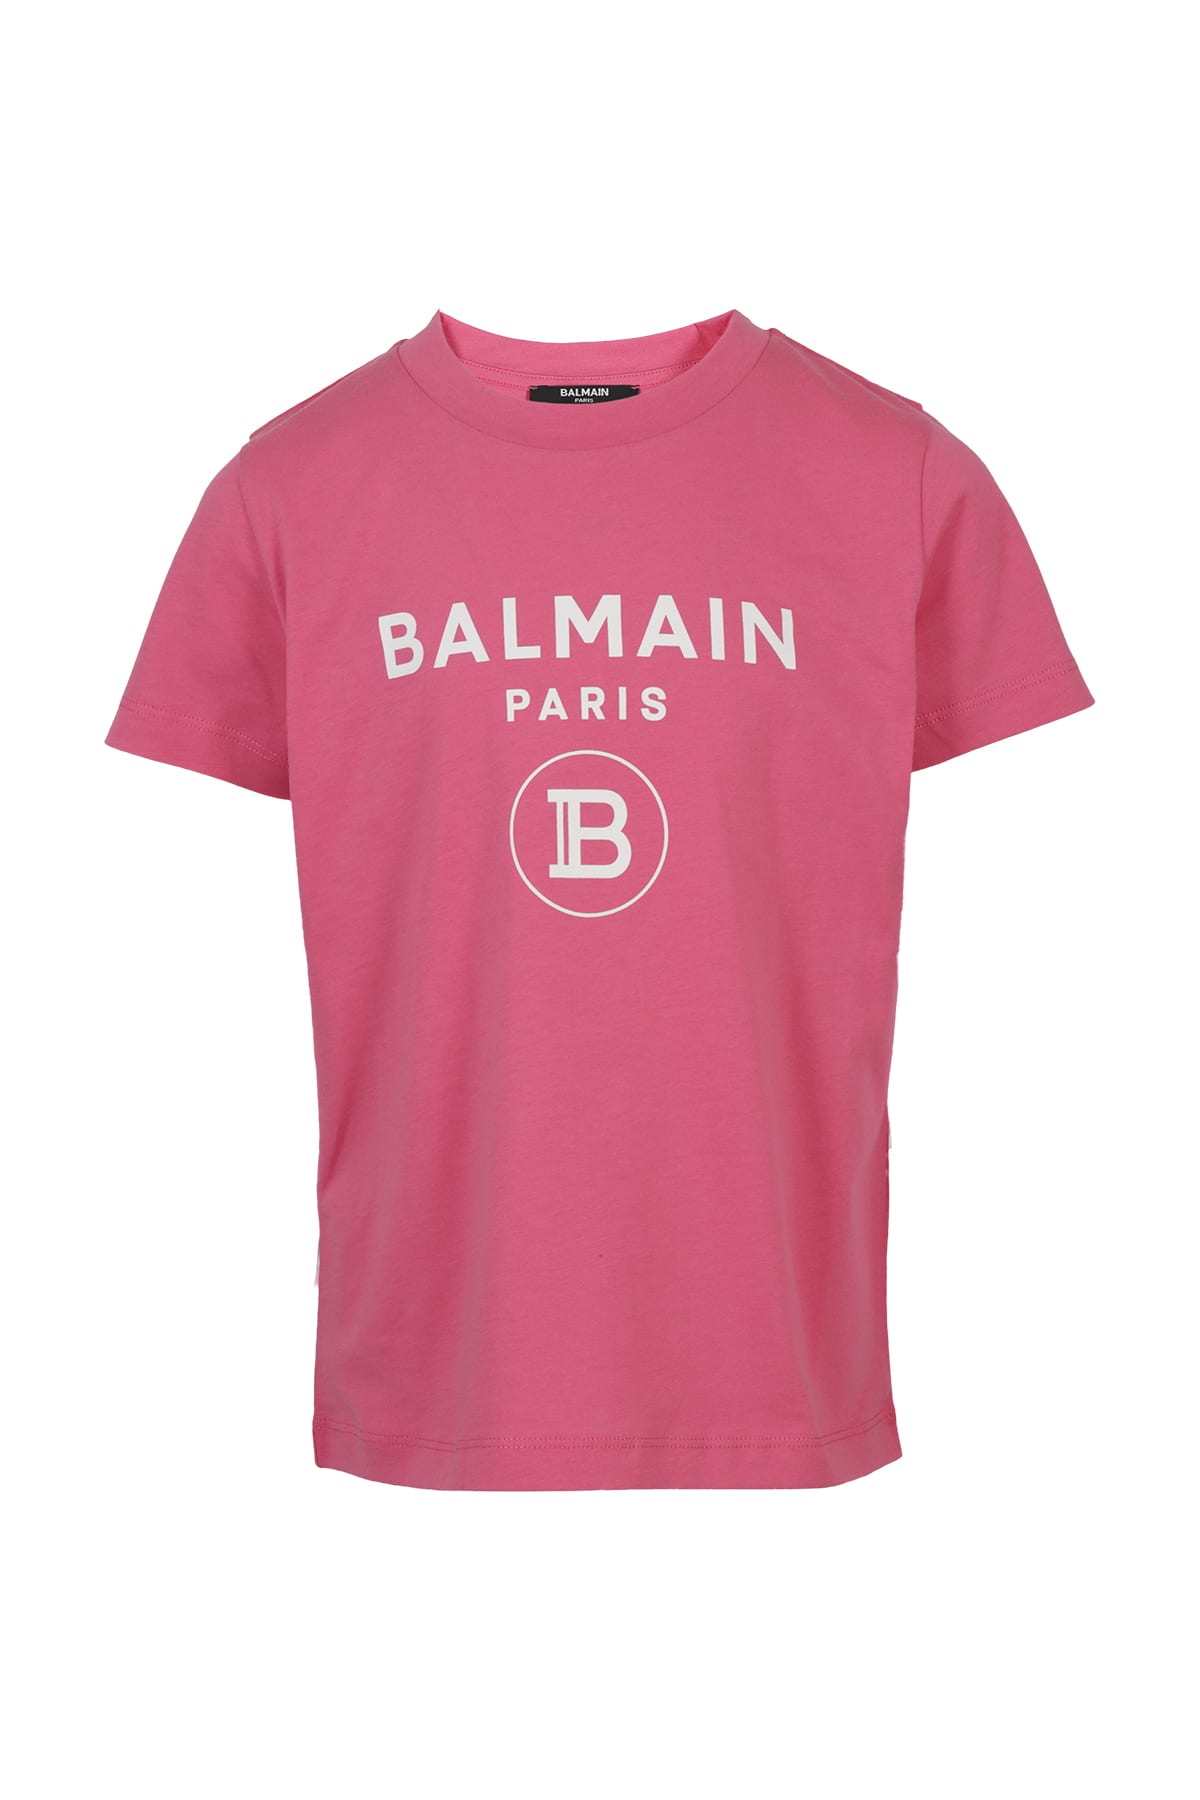 Balmain Kids' T-shirt In Fuxia